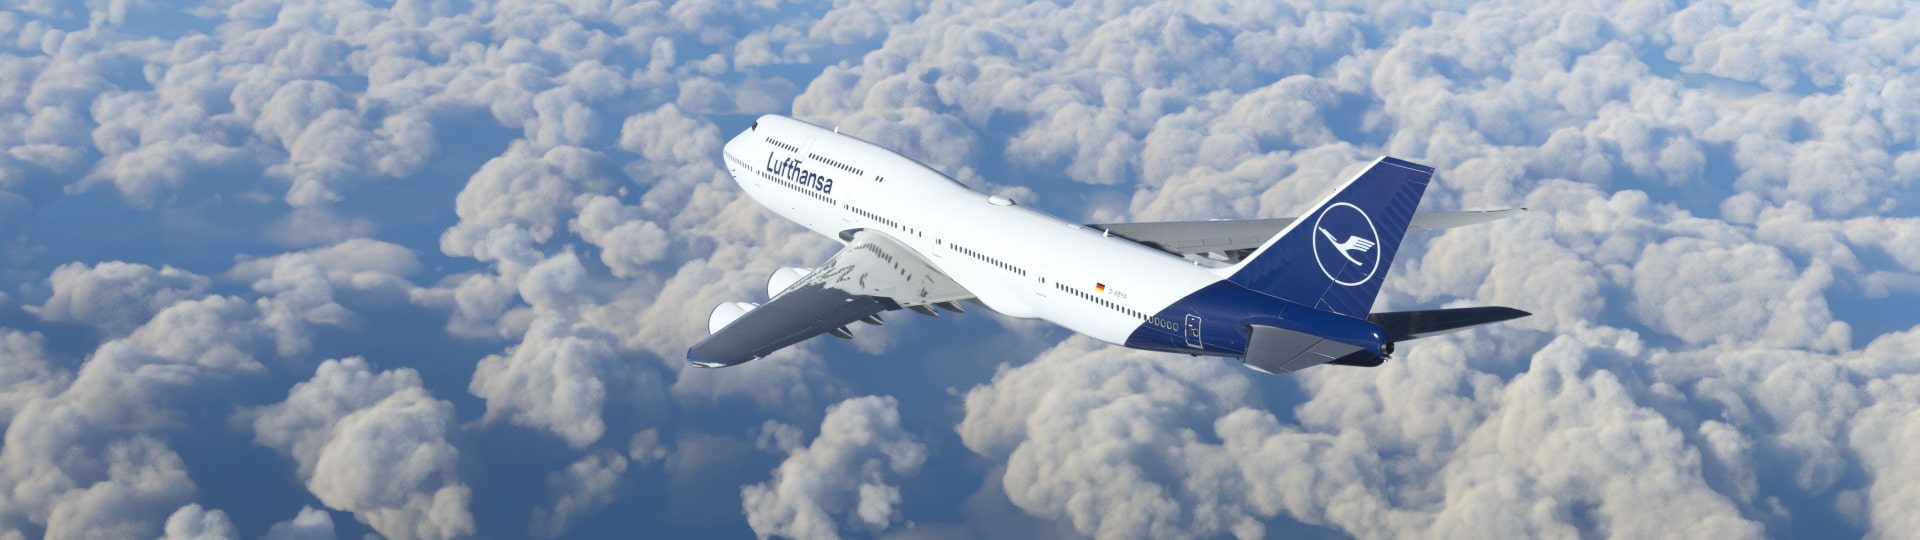 Lufthansa v prvním čtvrtletí snížila ztrátu